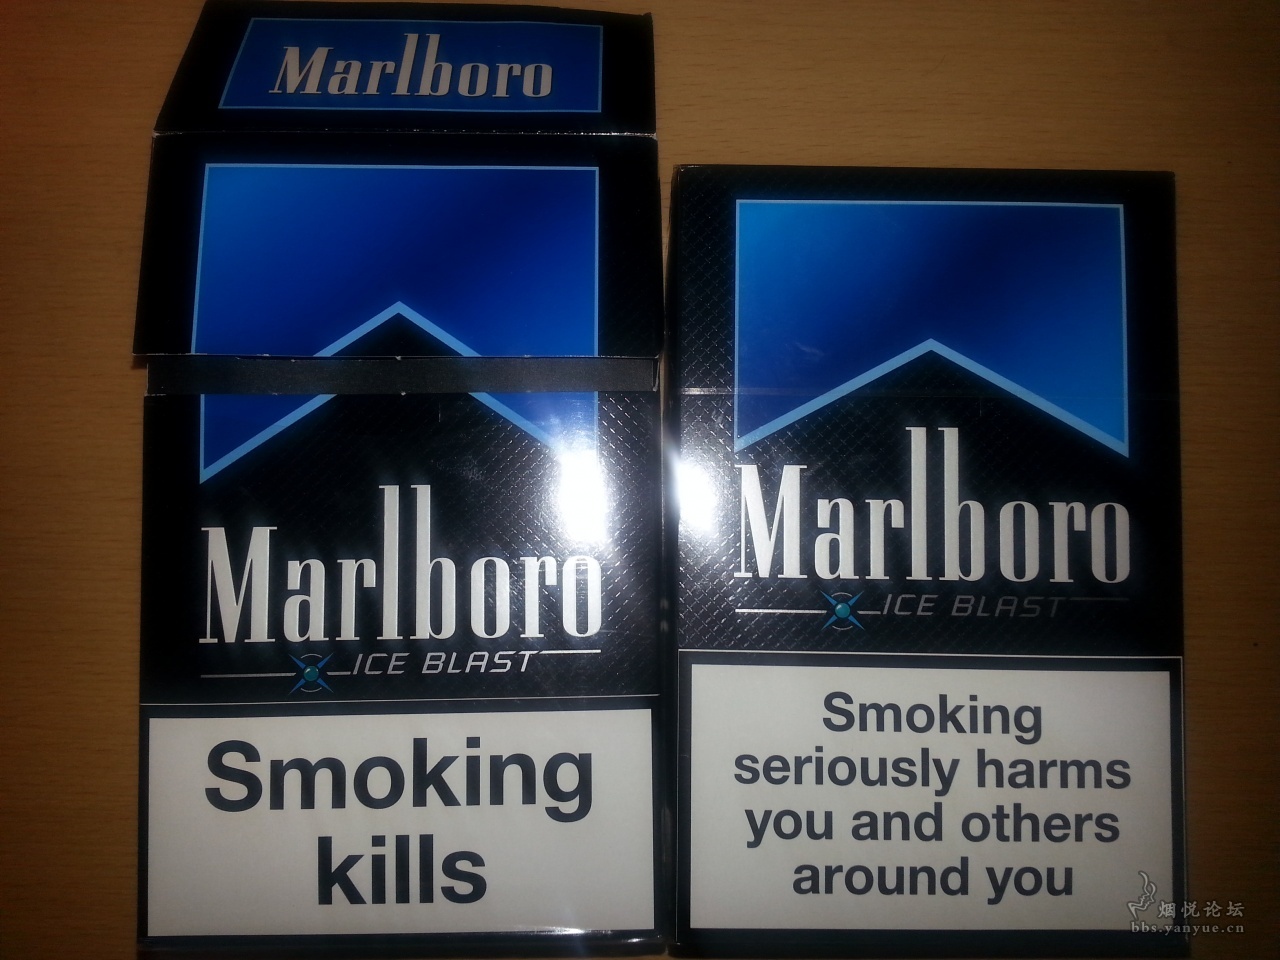 网购微信买外烟Marlboro欧盟万宝路黑冰爆珠细支方盒装上爱喜铁塔猫外烟店